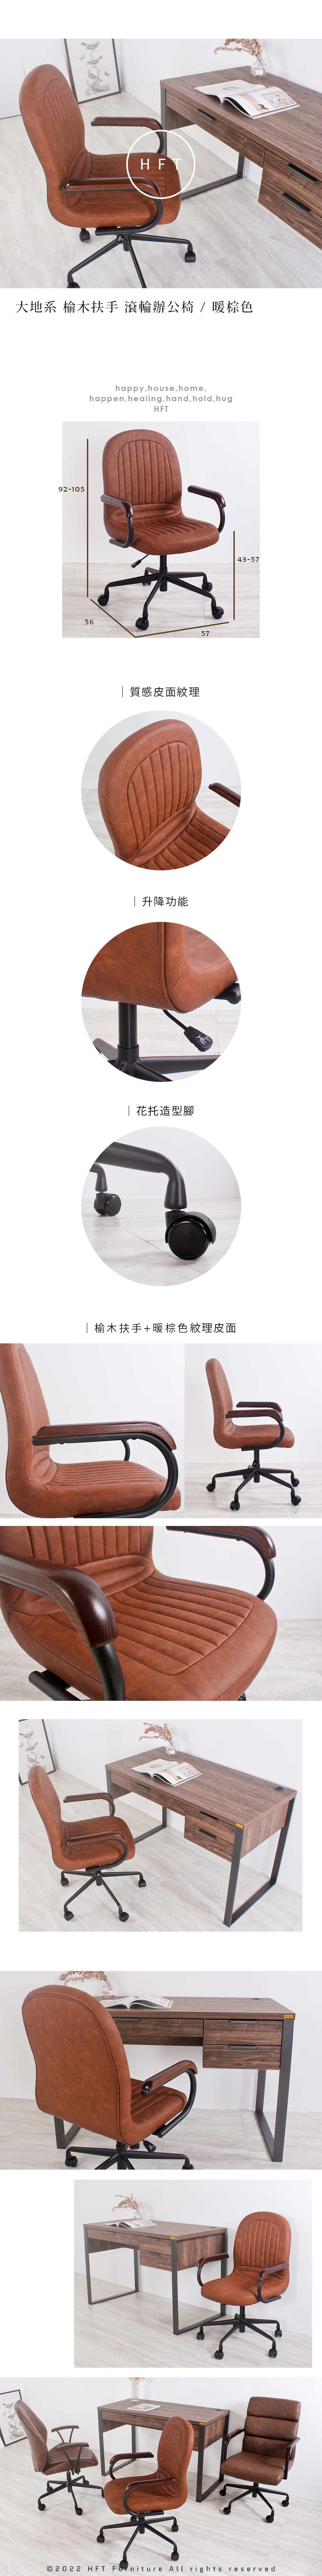 HFT-0081-wood-arm-office-chair.jpg